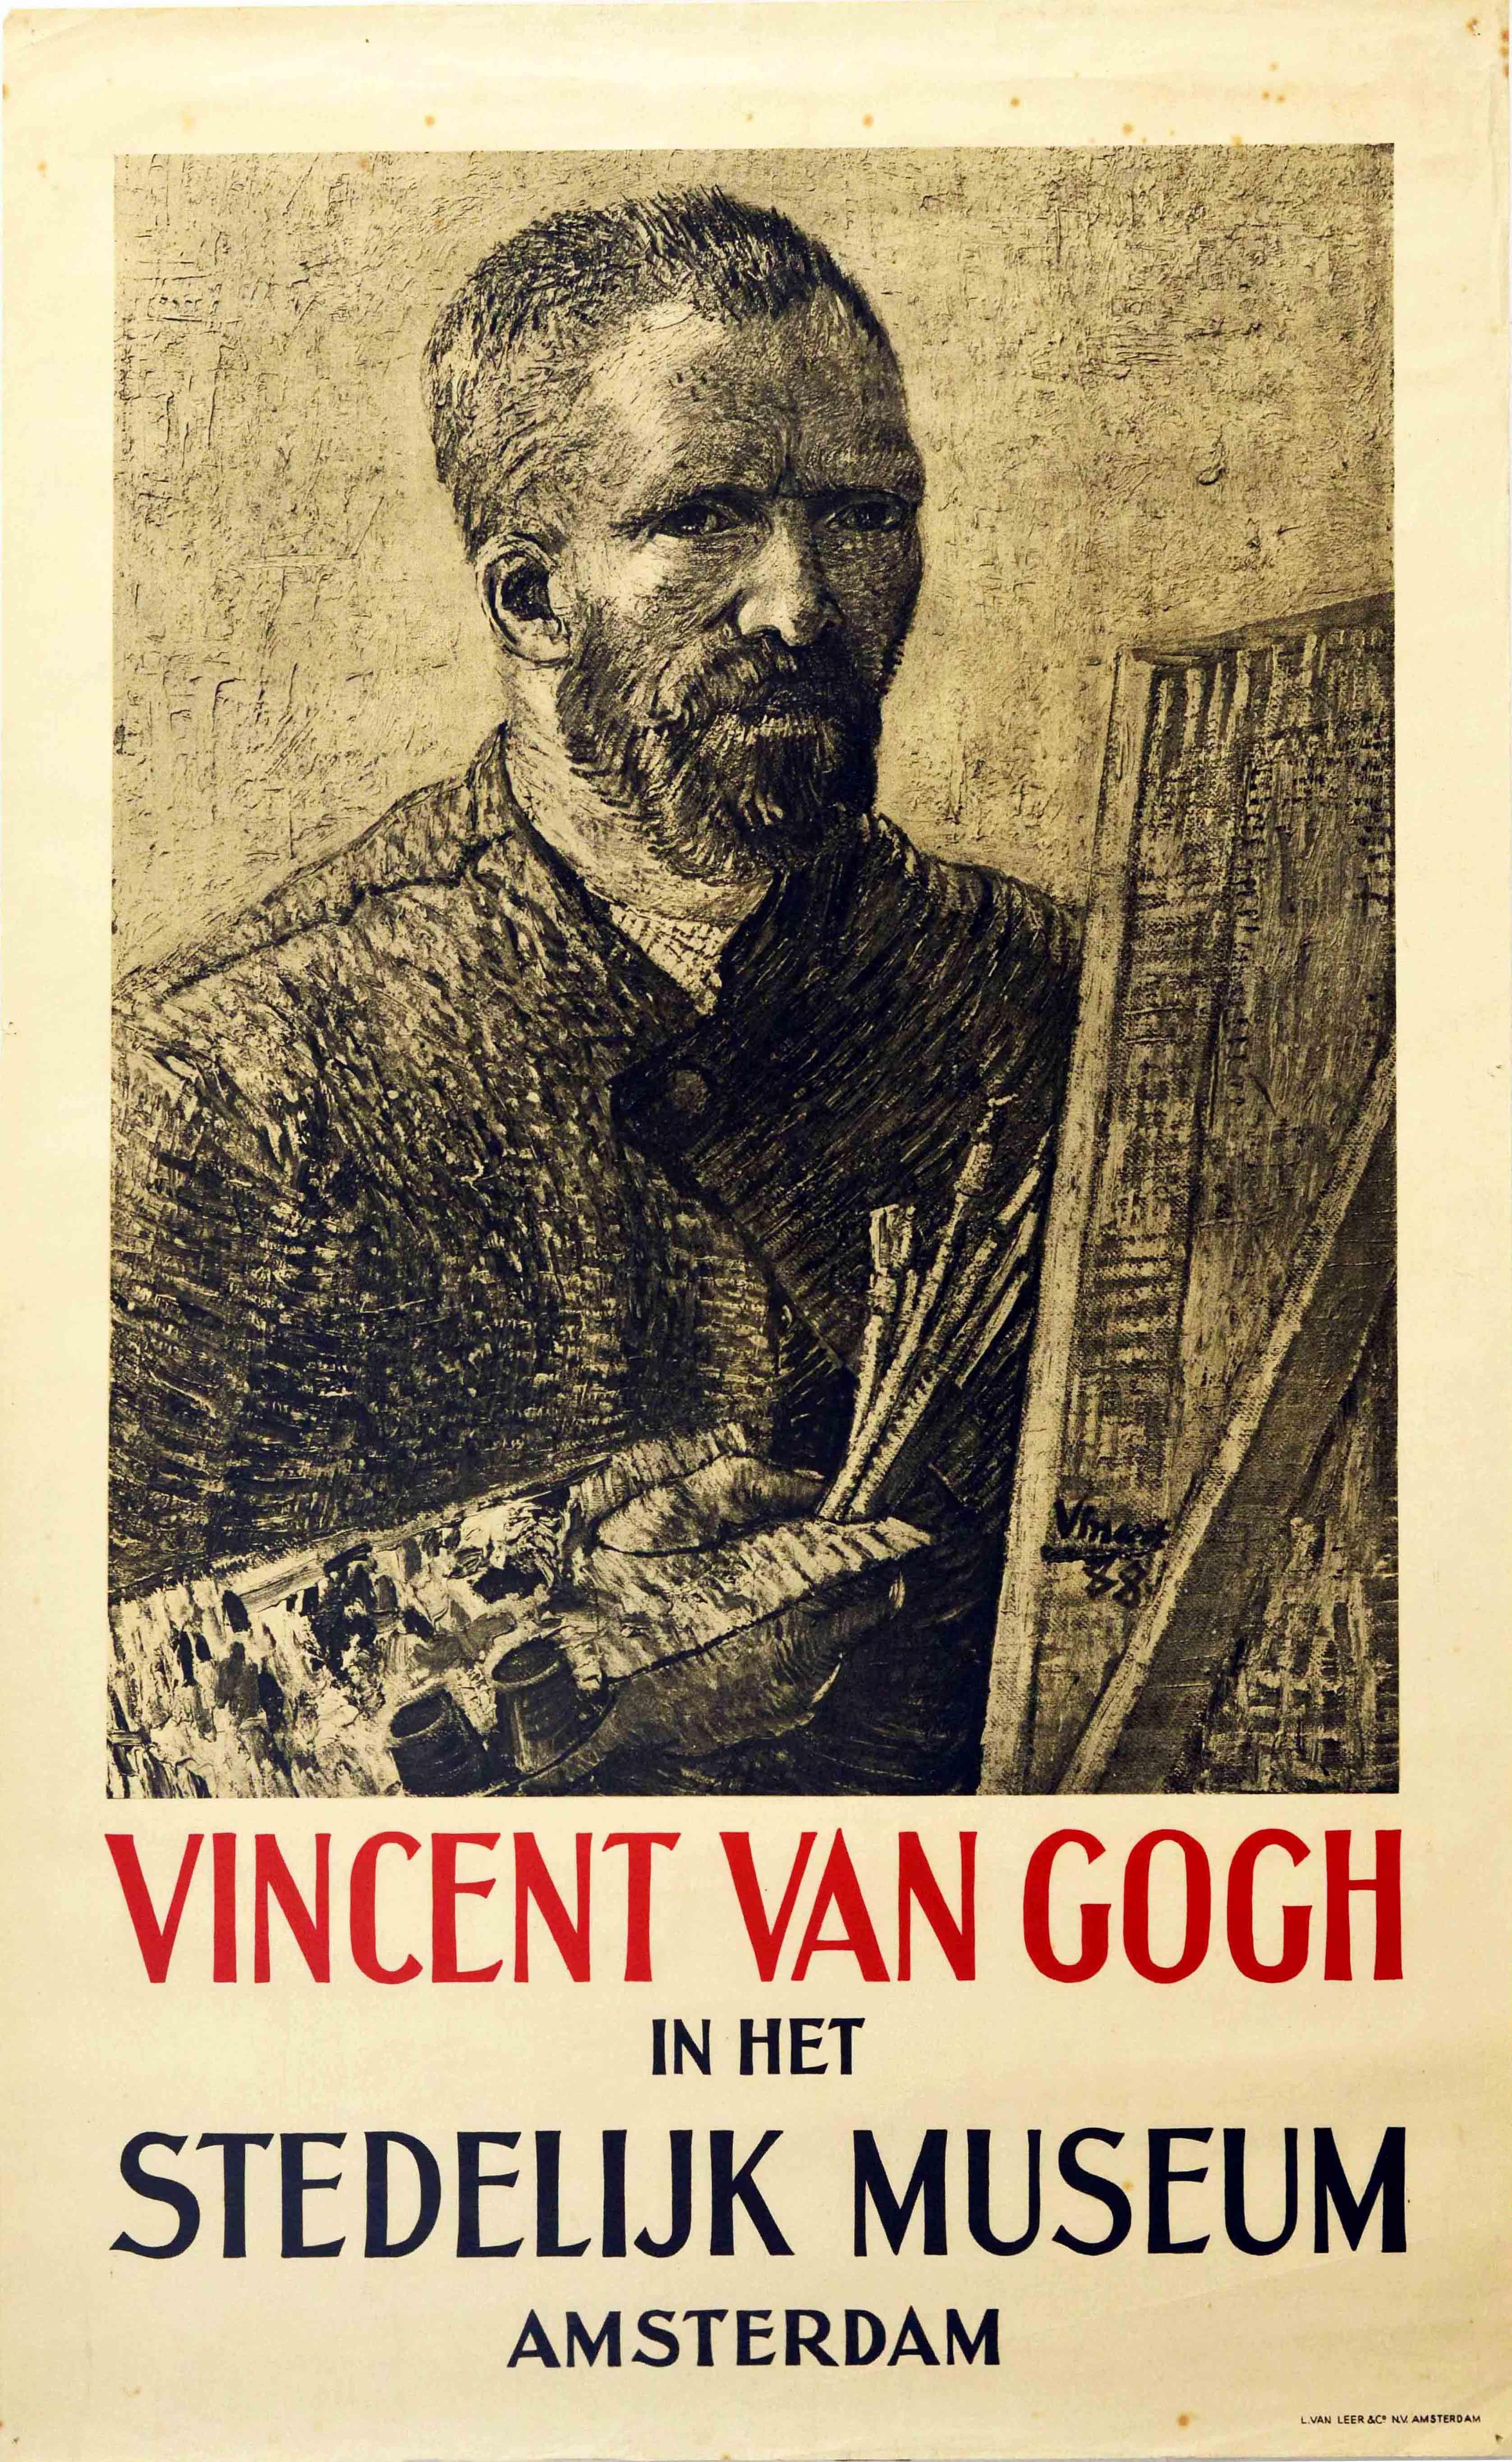 (After) Vincent van Gogh Print - Original Vintage Art Exhibition Poster Vincent Van Gogh In Het Stedelijk Museum